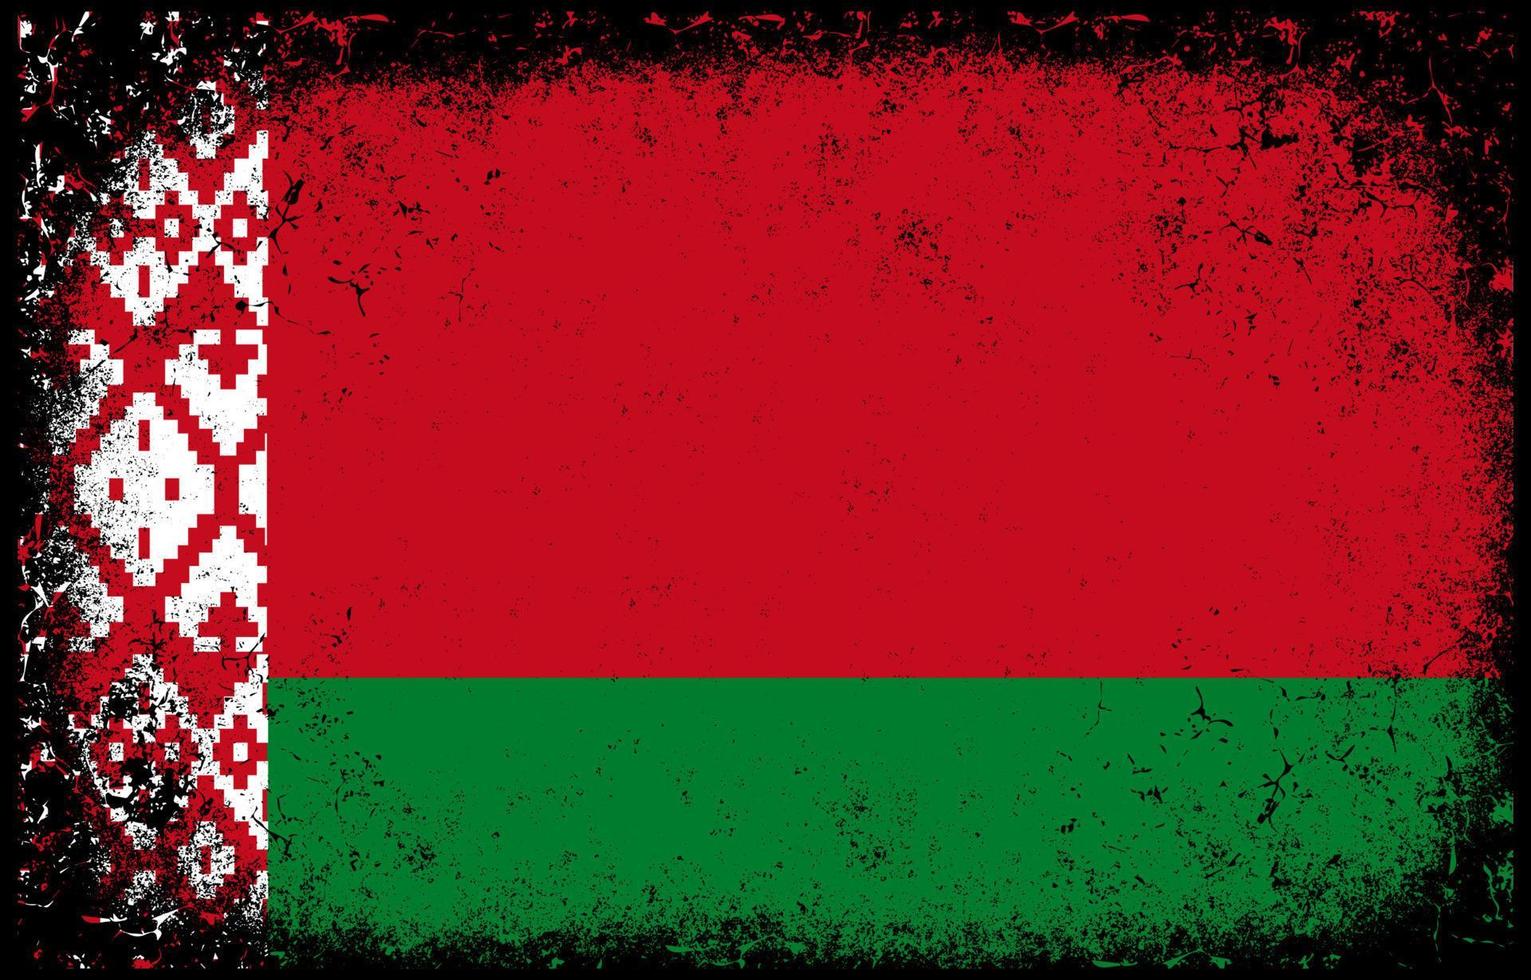 viejo sucio grunge vintage bielorrusia bandera nacional ilustración vector